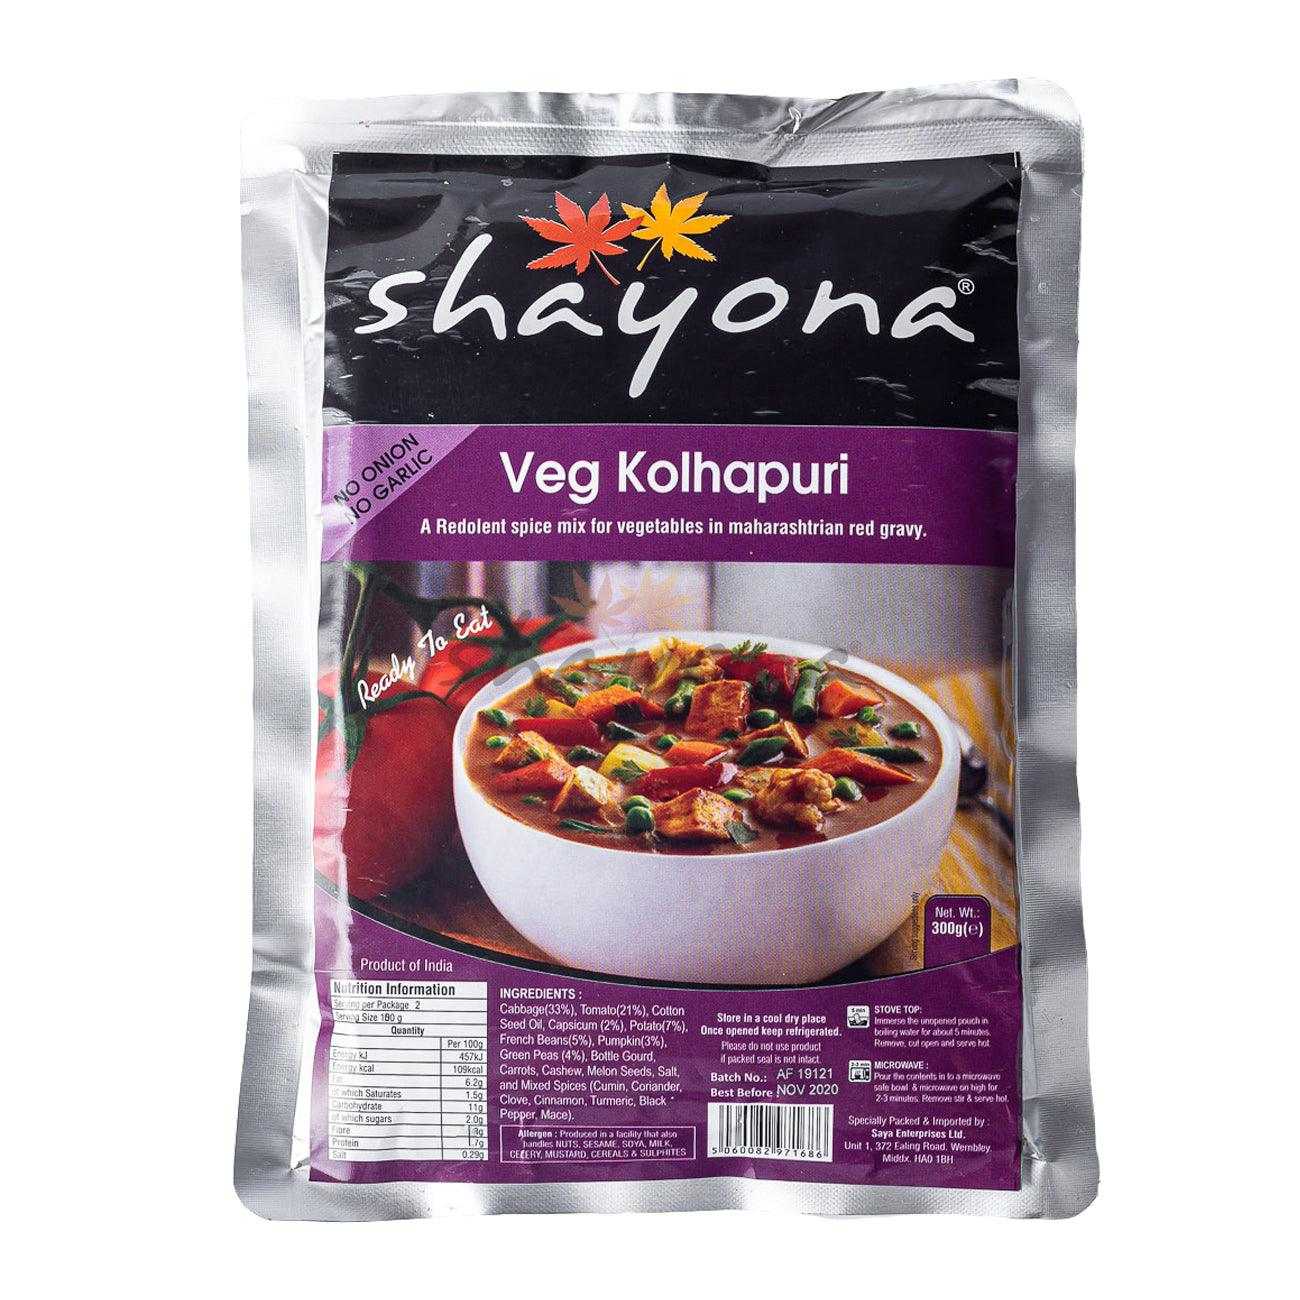 Shayona Veg Kolhapuri